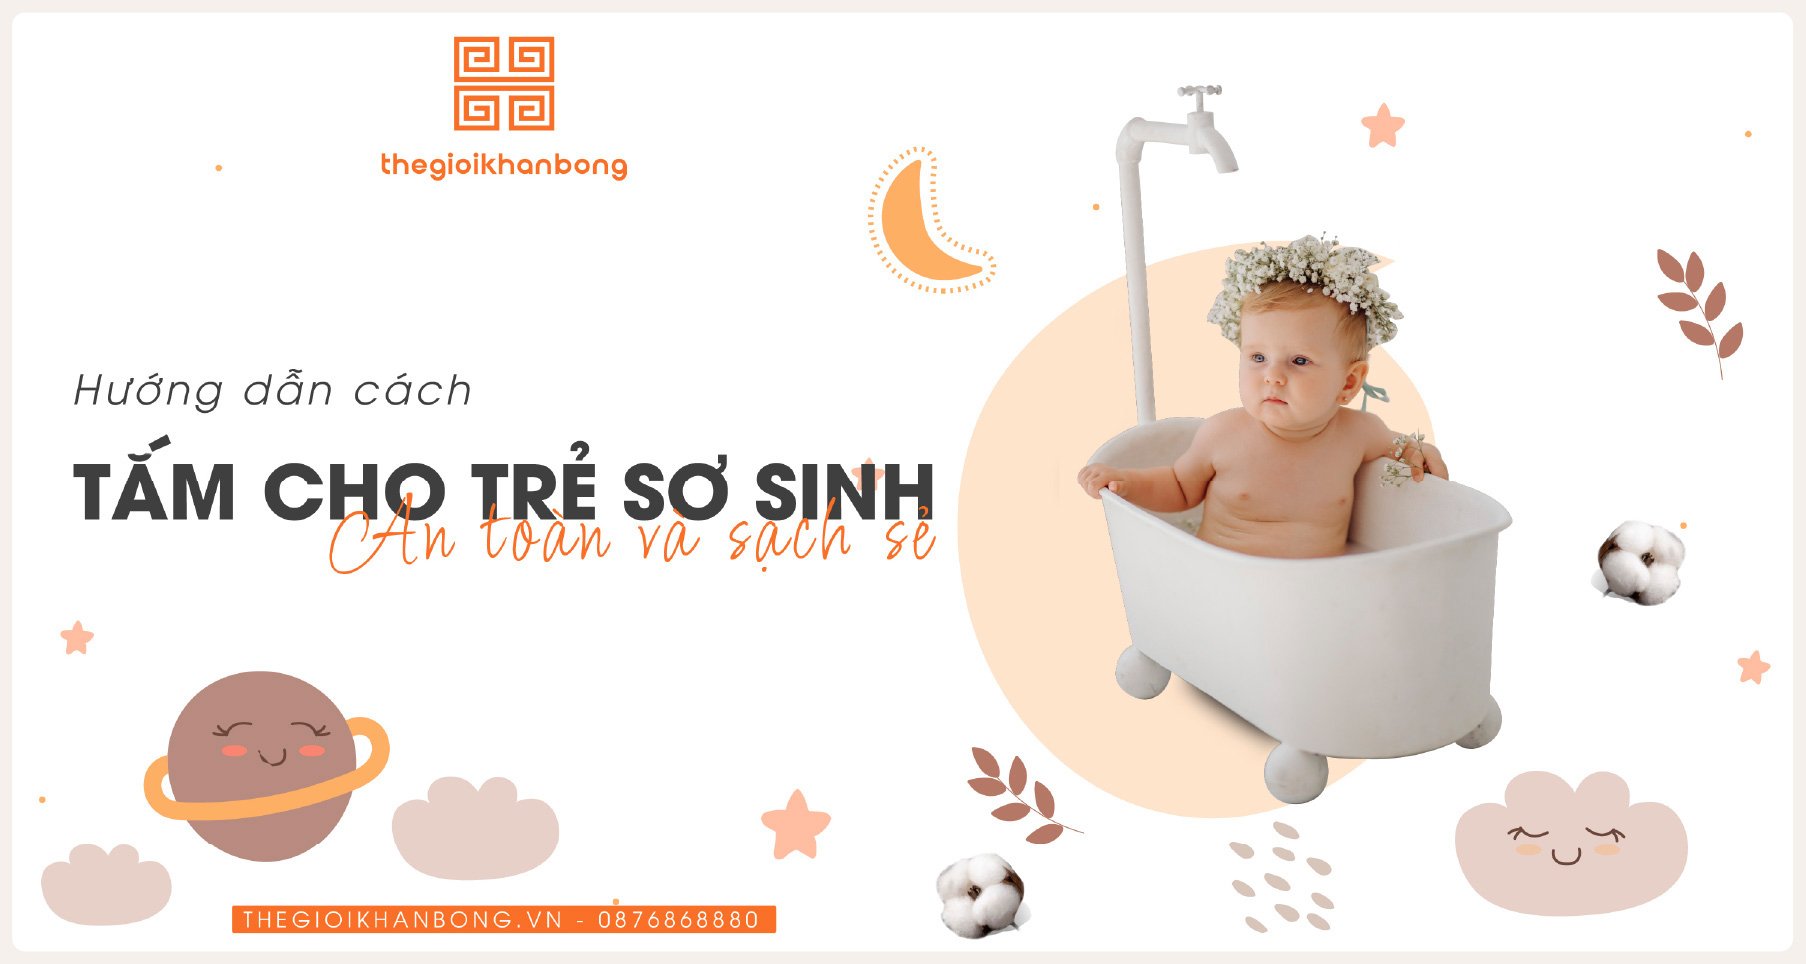 Hướng dẫn A-Z cách tắm cho trẻ sơ sinh an toàn - sạch - khoẻ